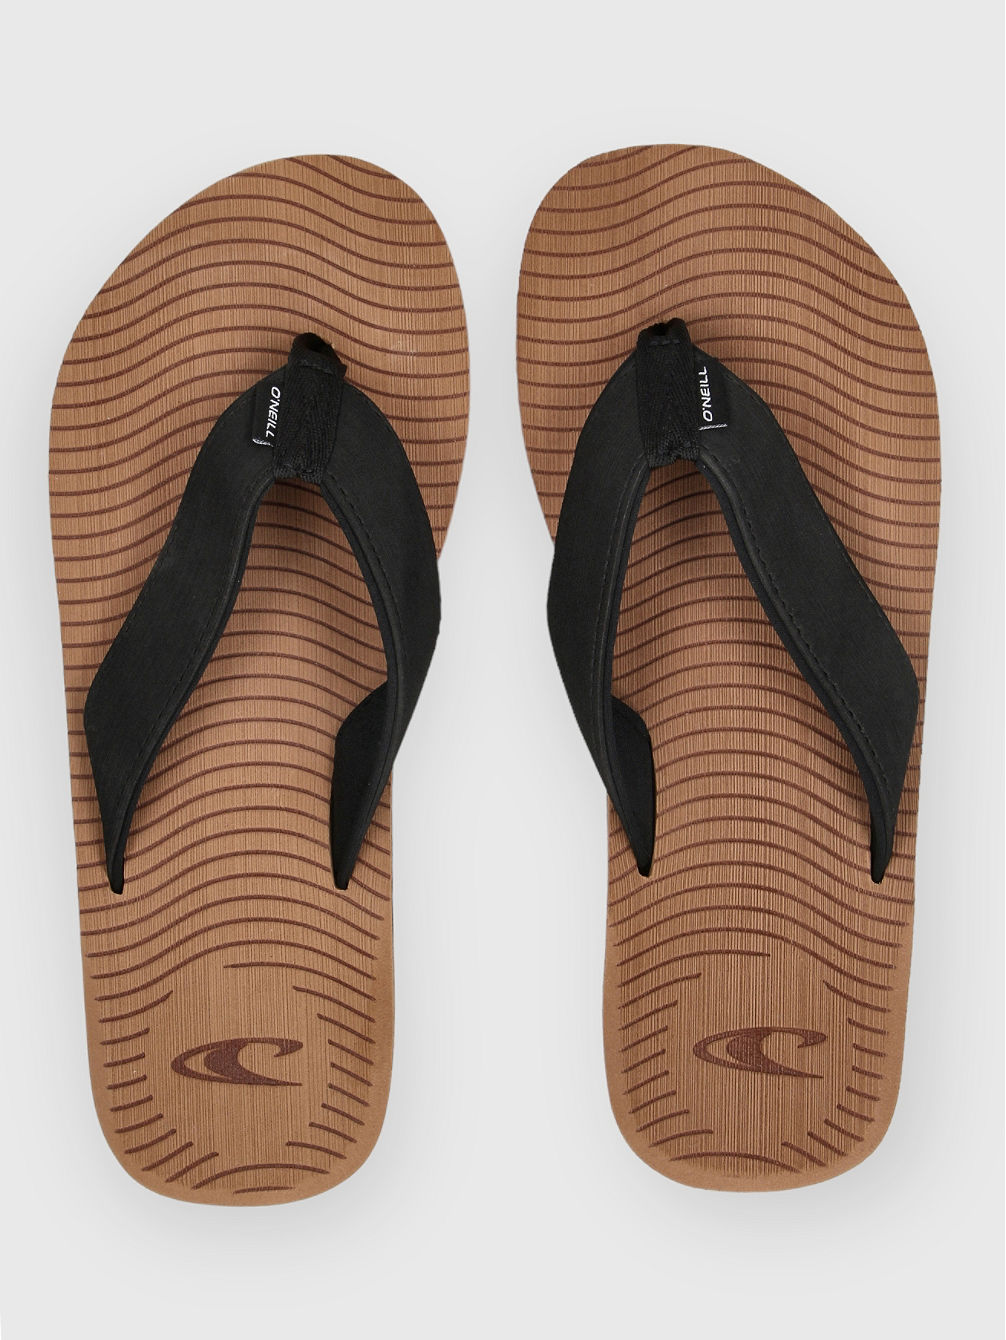 Koosh Sandals